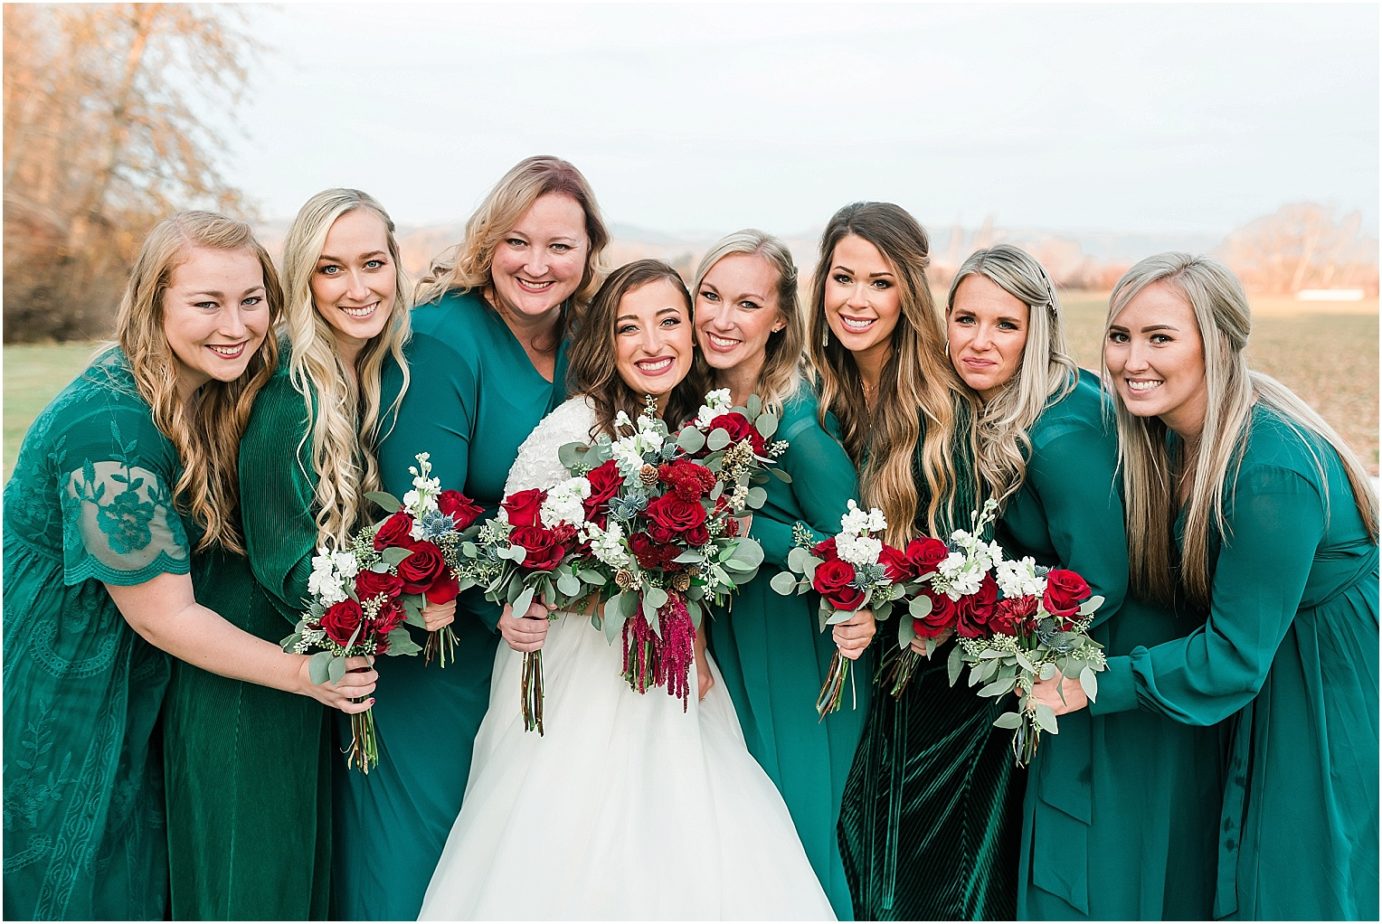 Ellensburg backyard wedding- bride with bridesmaids